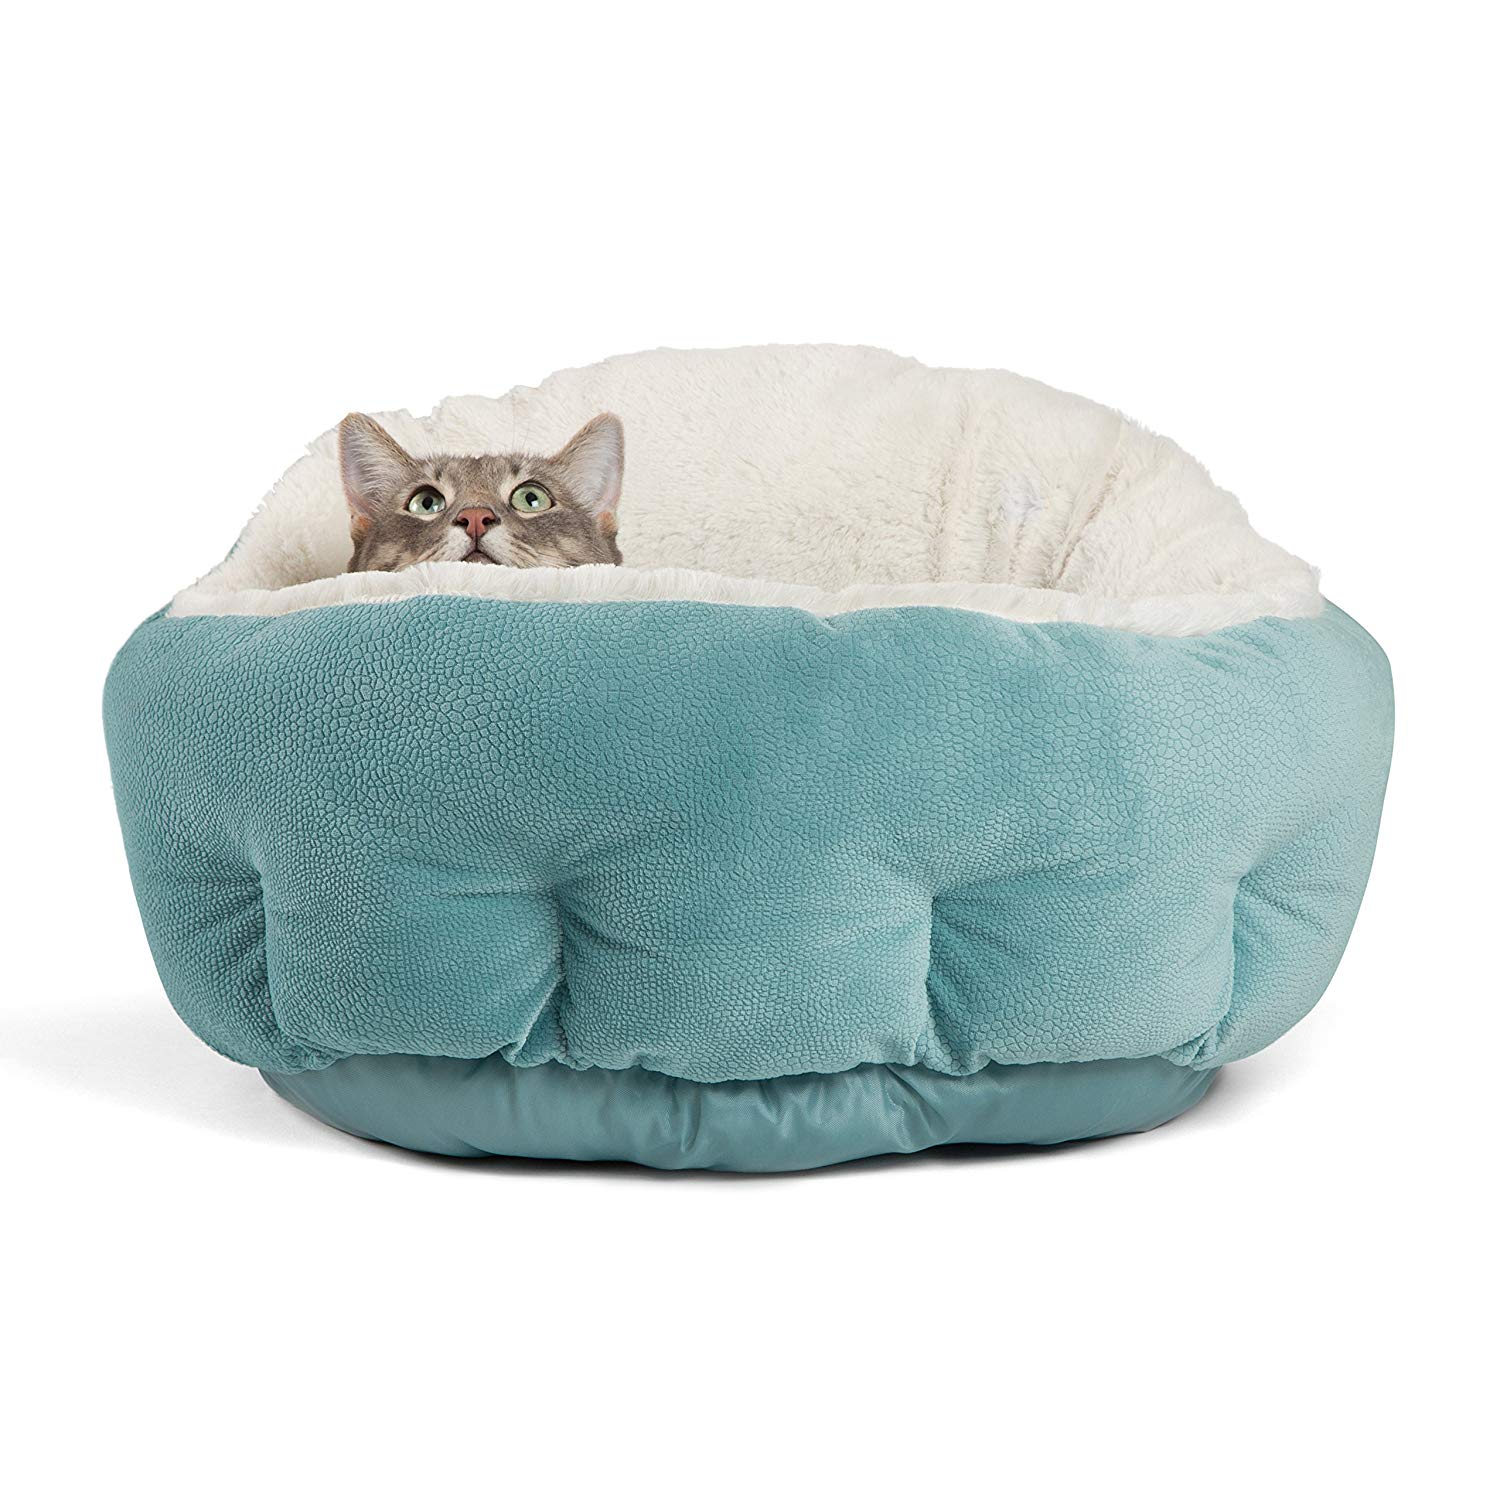 best luxury cat beds, luxury cat beds, luxury pet beds, luxury beds for cats, luxury kitten beds, luxury cat condo, cat condo, cat beds, best cat beds